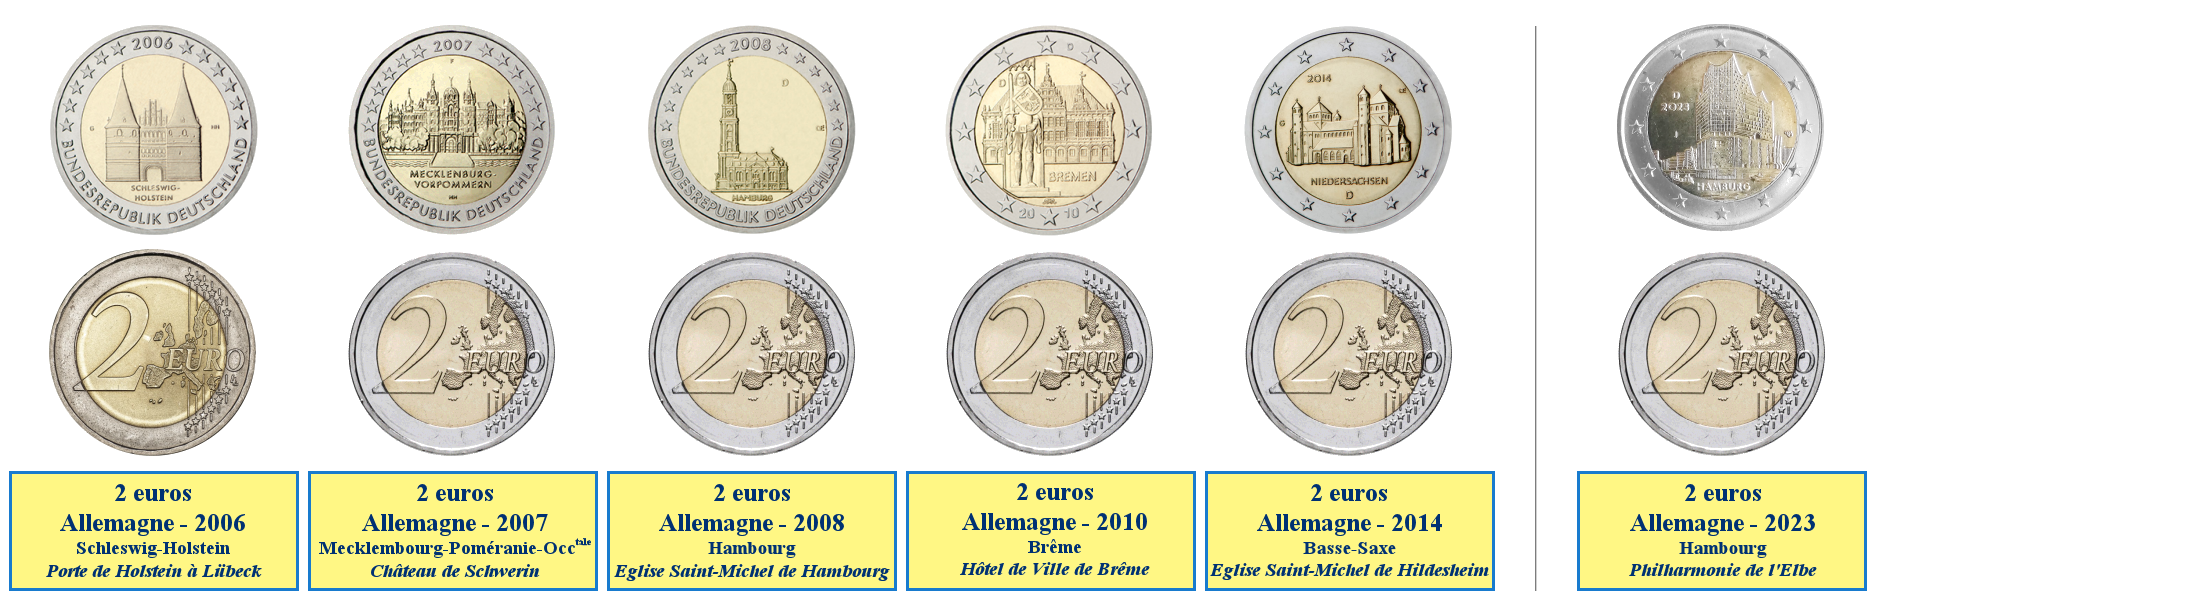 Photos de pièces de monnaies de 2 euros commémoratives des Länder du nord de l'Allemagne